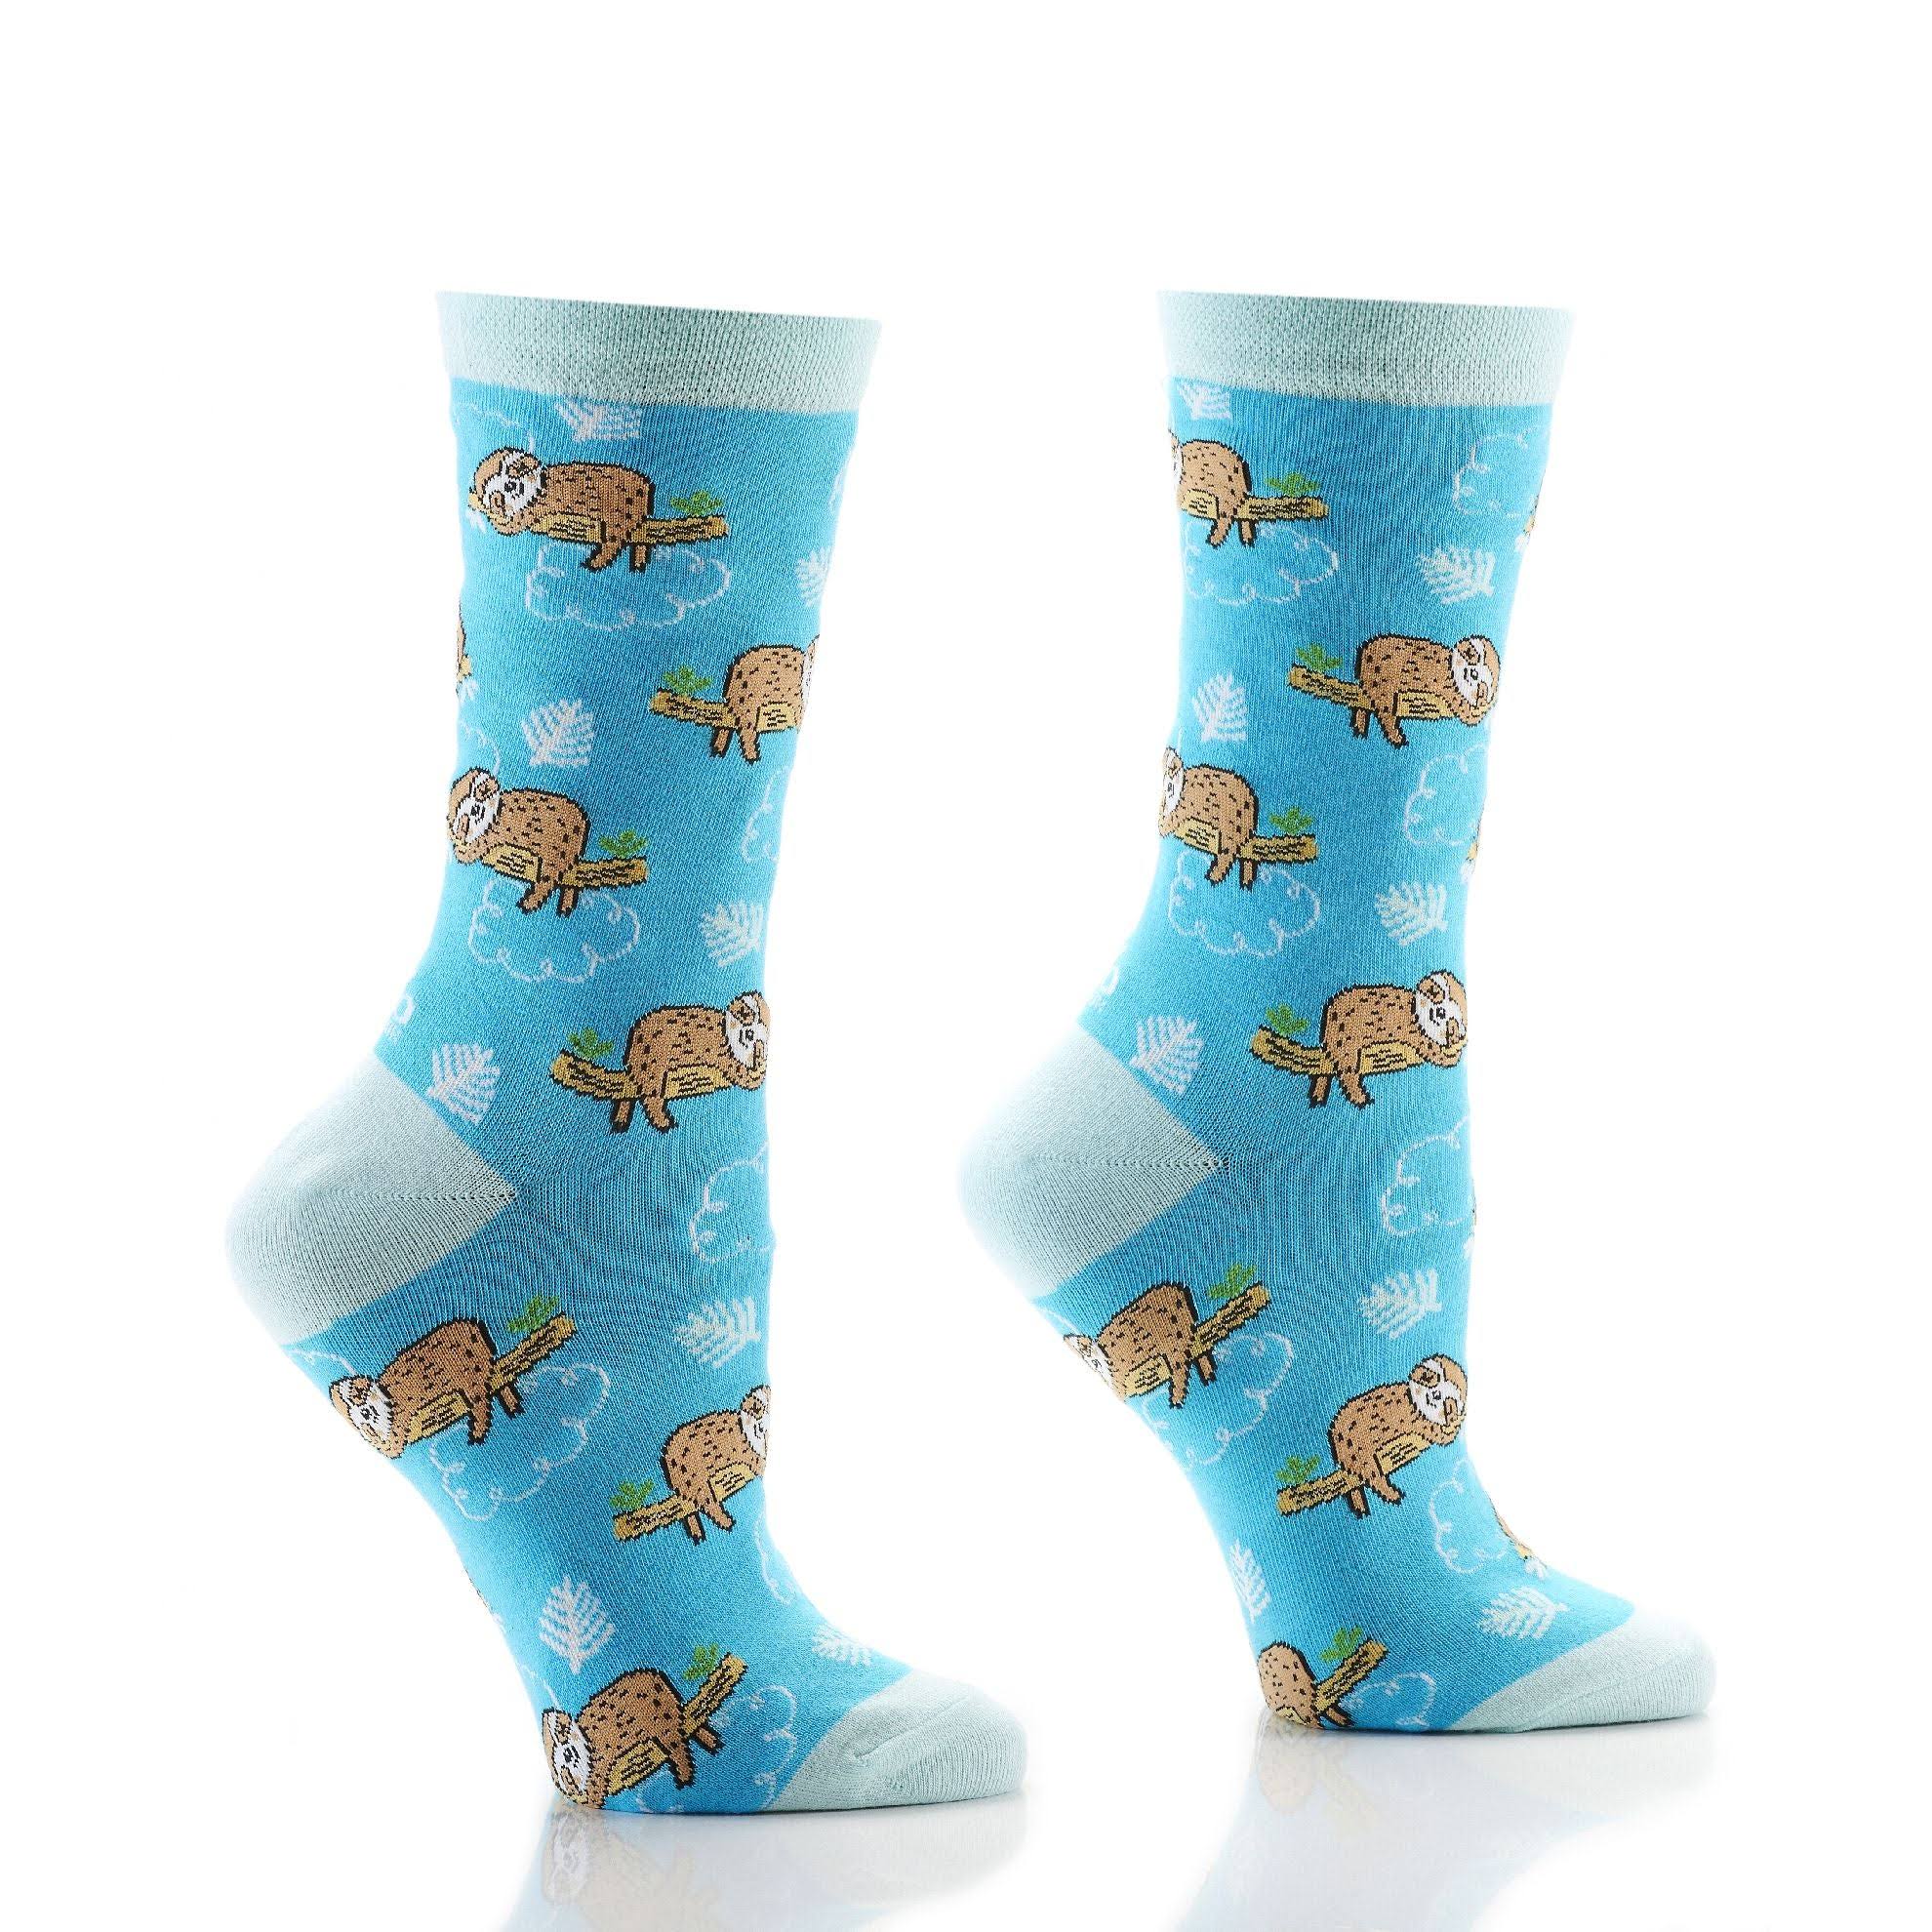 Yosox Blue Sleepy Sloths Crew Socks One-Size